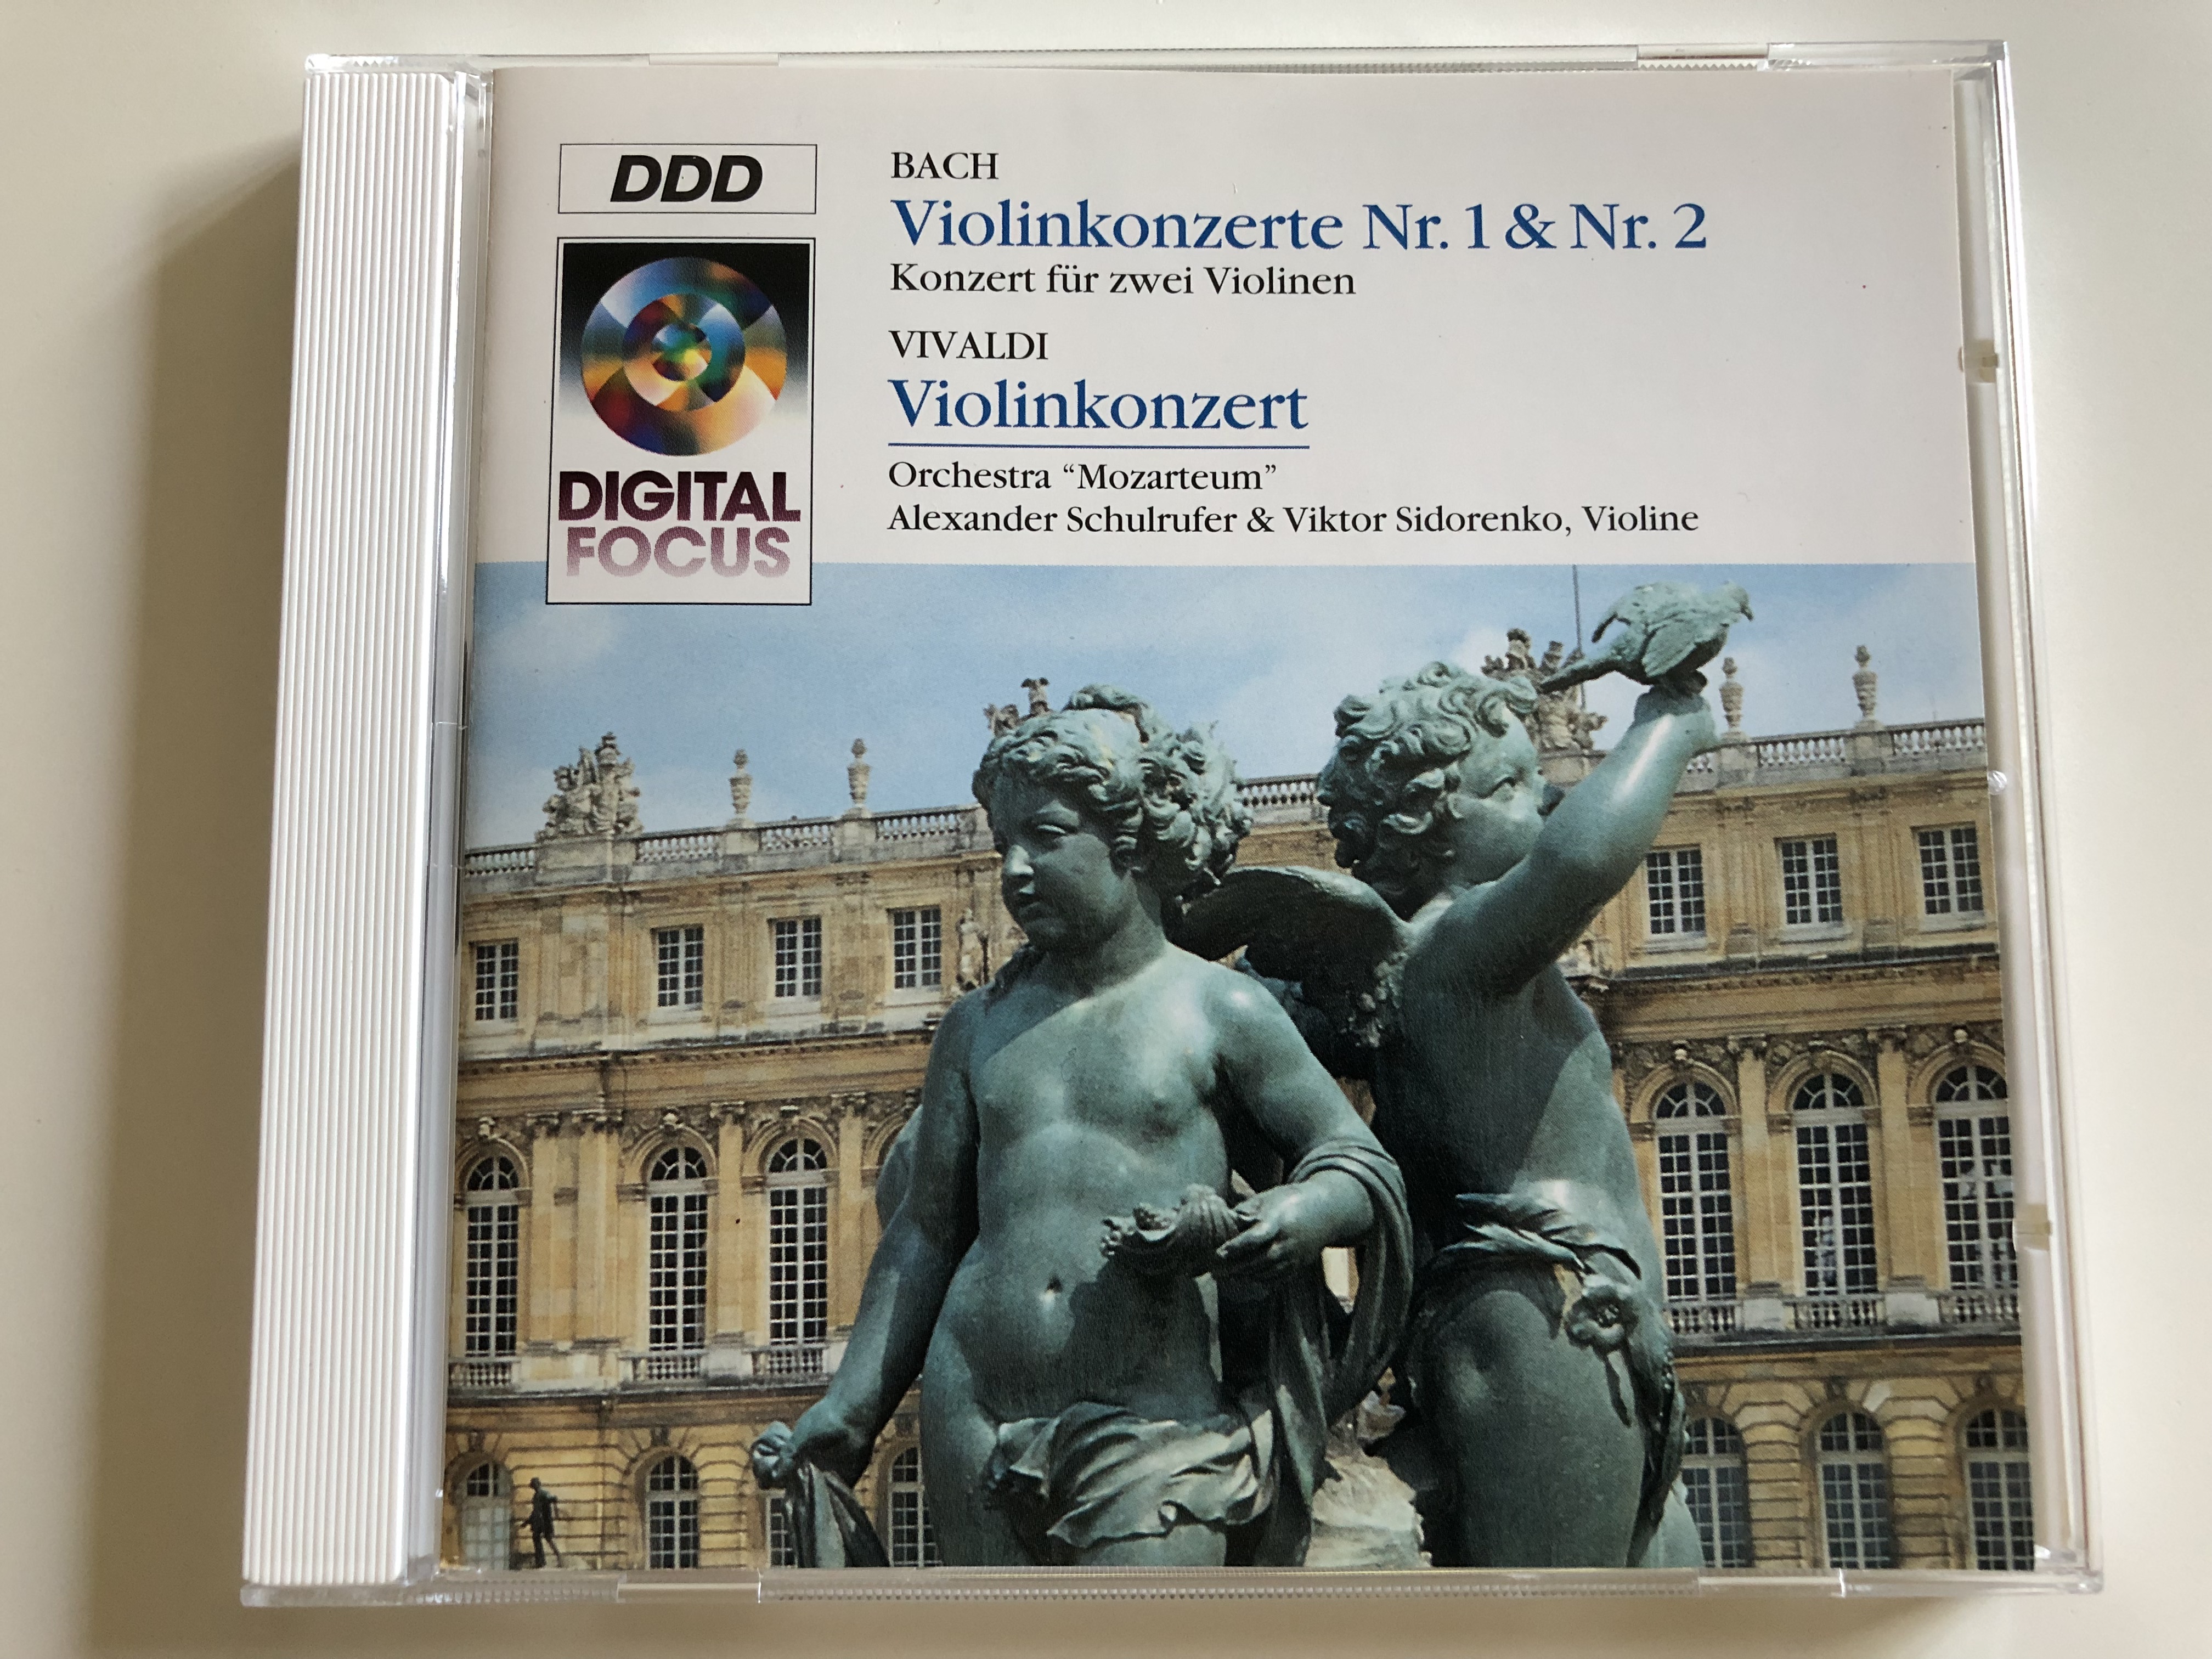 bach-violinkonzerte-nr.-1-nr.-2-konzert-f-r-zwei-violinen-vivaldi-violinkonzert-orchestra-mozarteum-alexander-schulrufer-viktor-sidorenko-violine-qk-57217-audio-cd-1993-1-.jpg